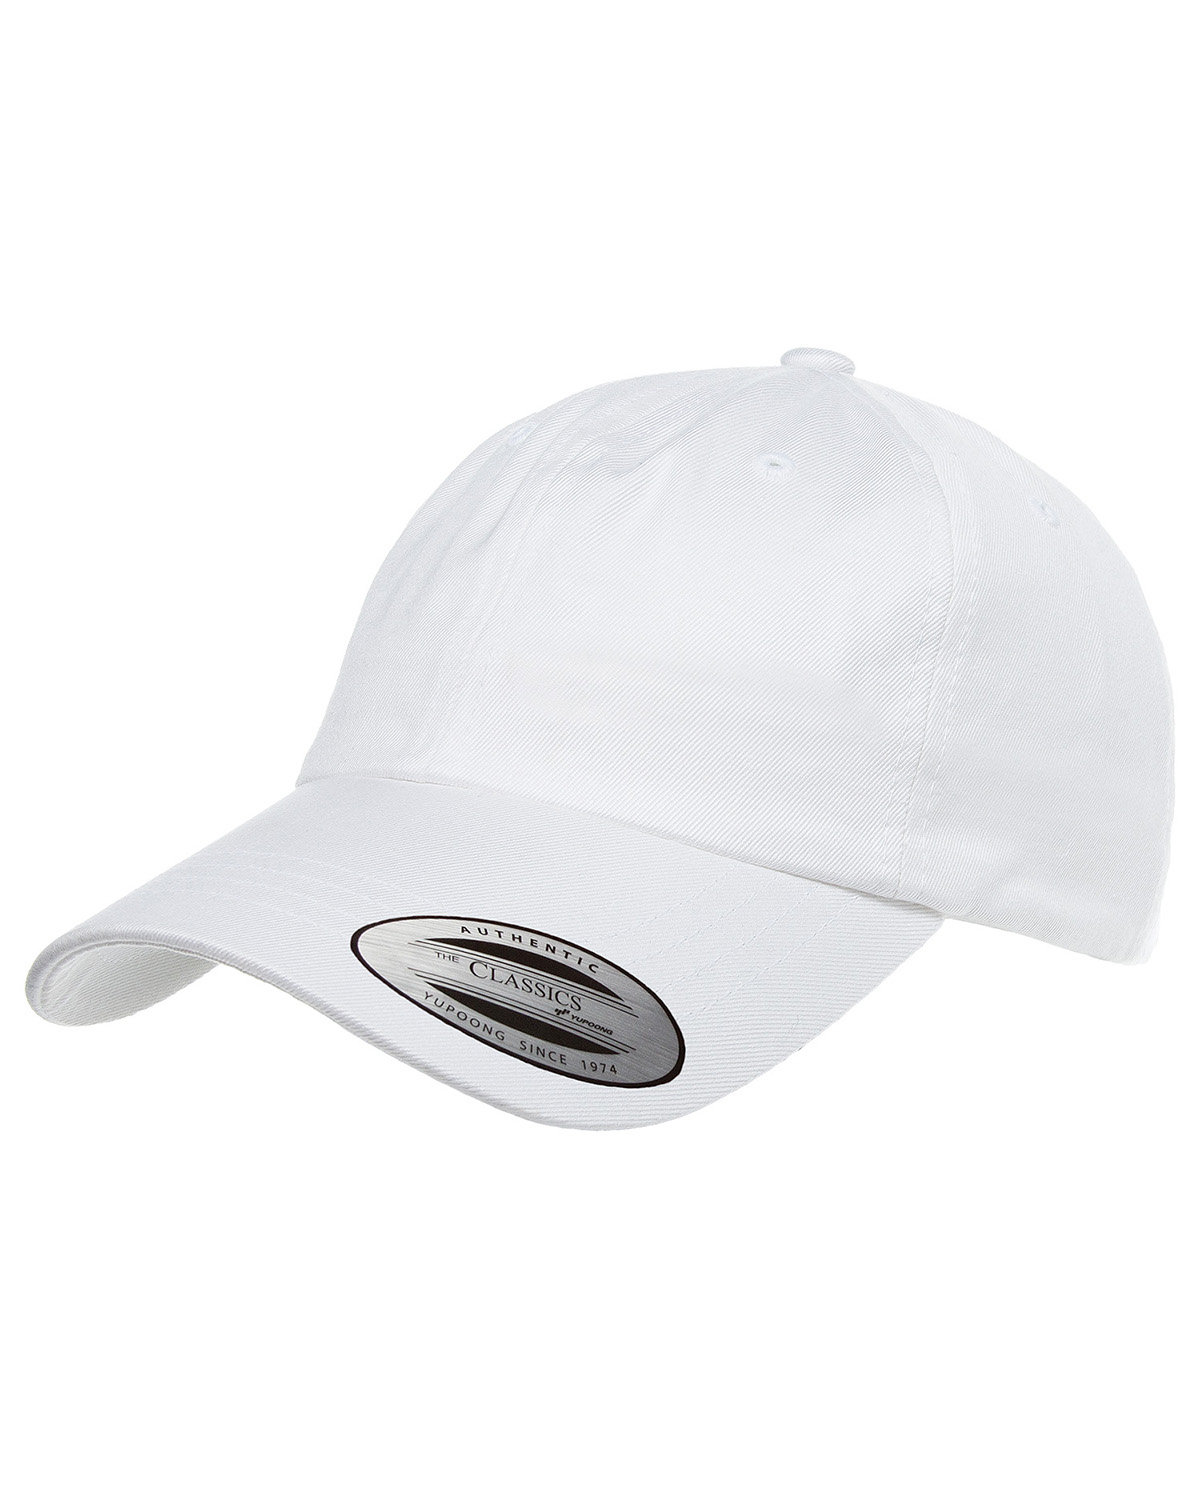 White LAT Dad Hat